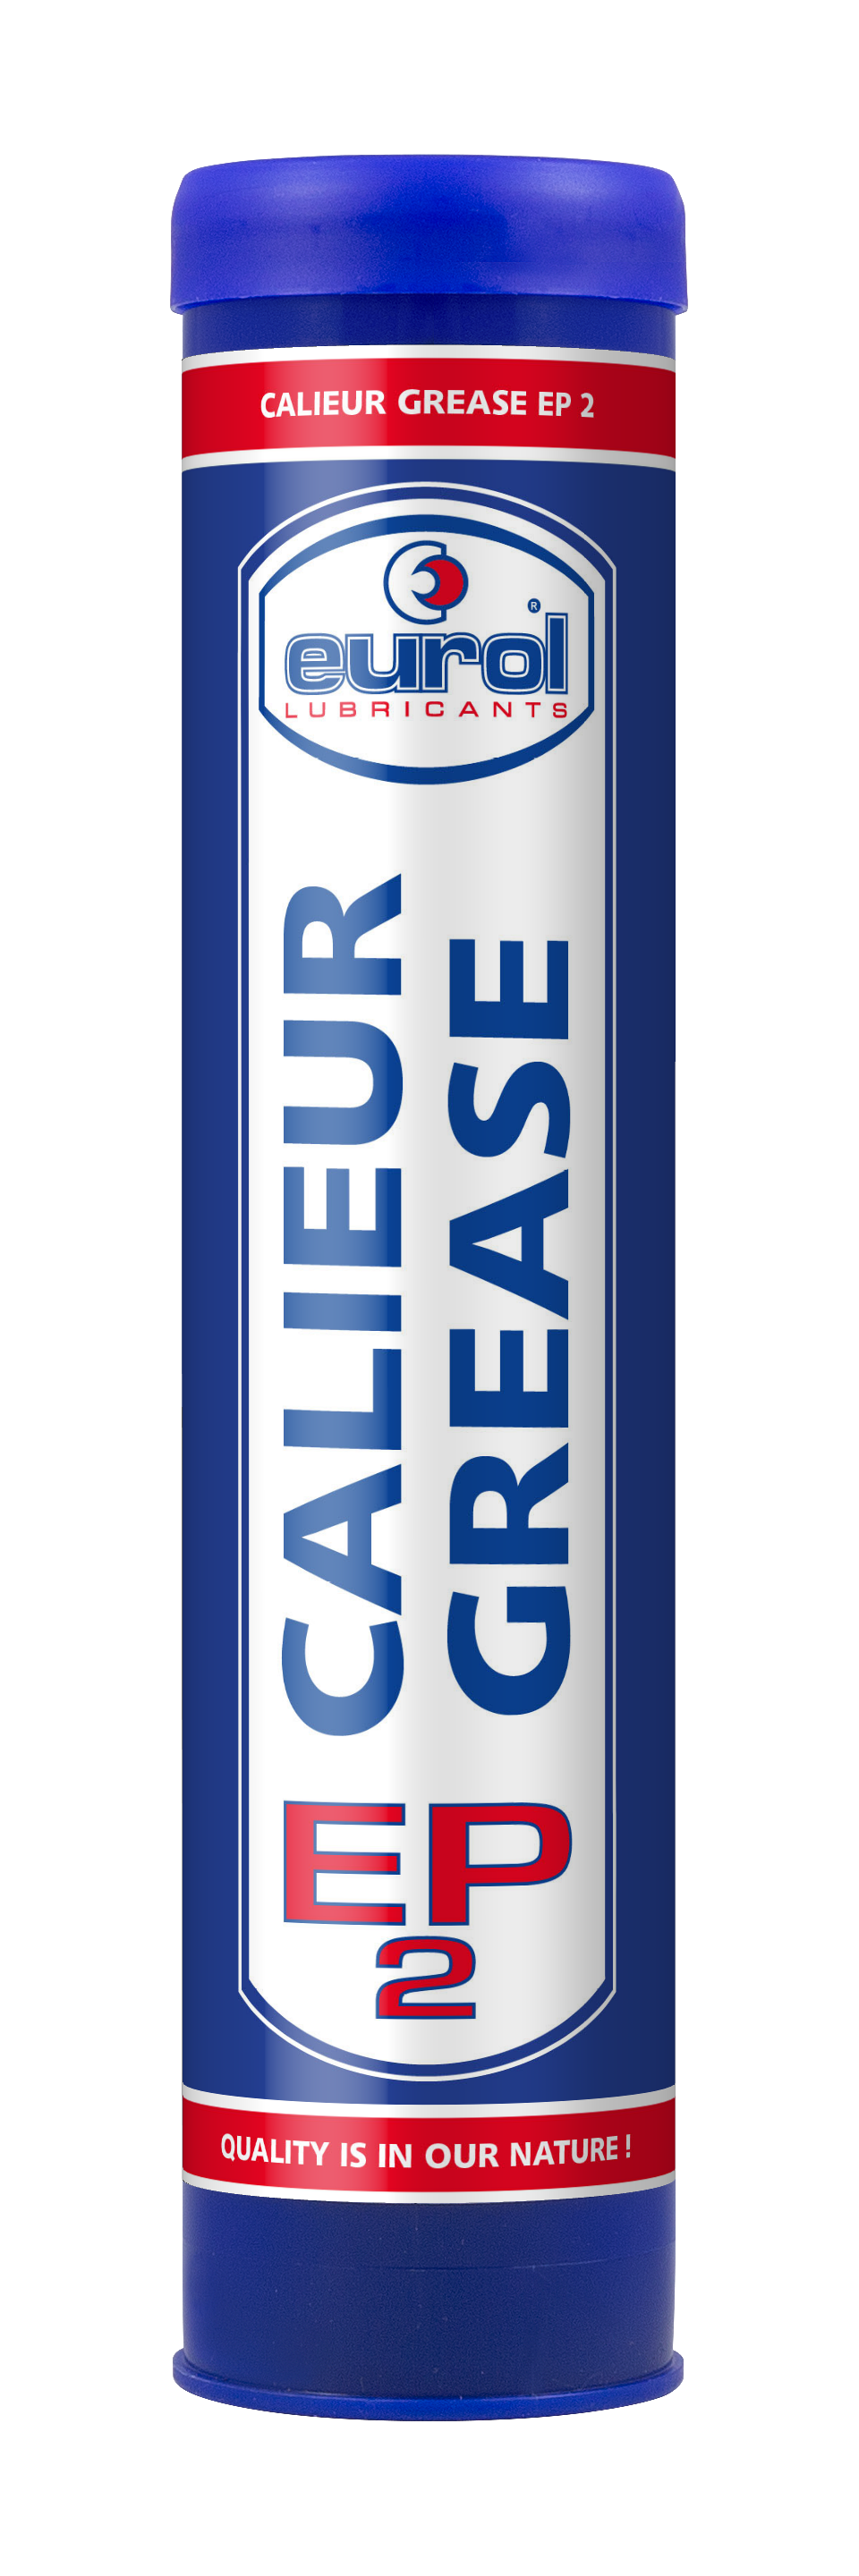 Eurol Calieur Grease EP 2, 12 x 400 gr detail 2